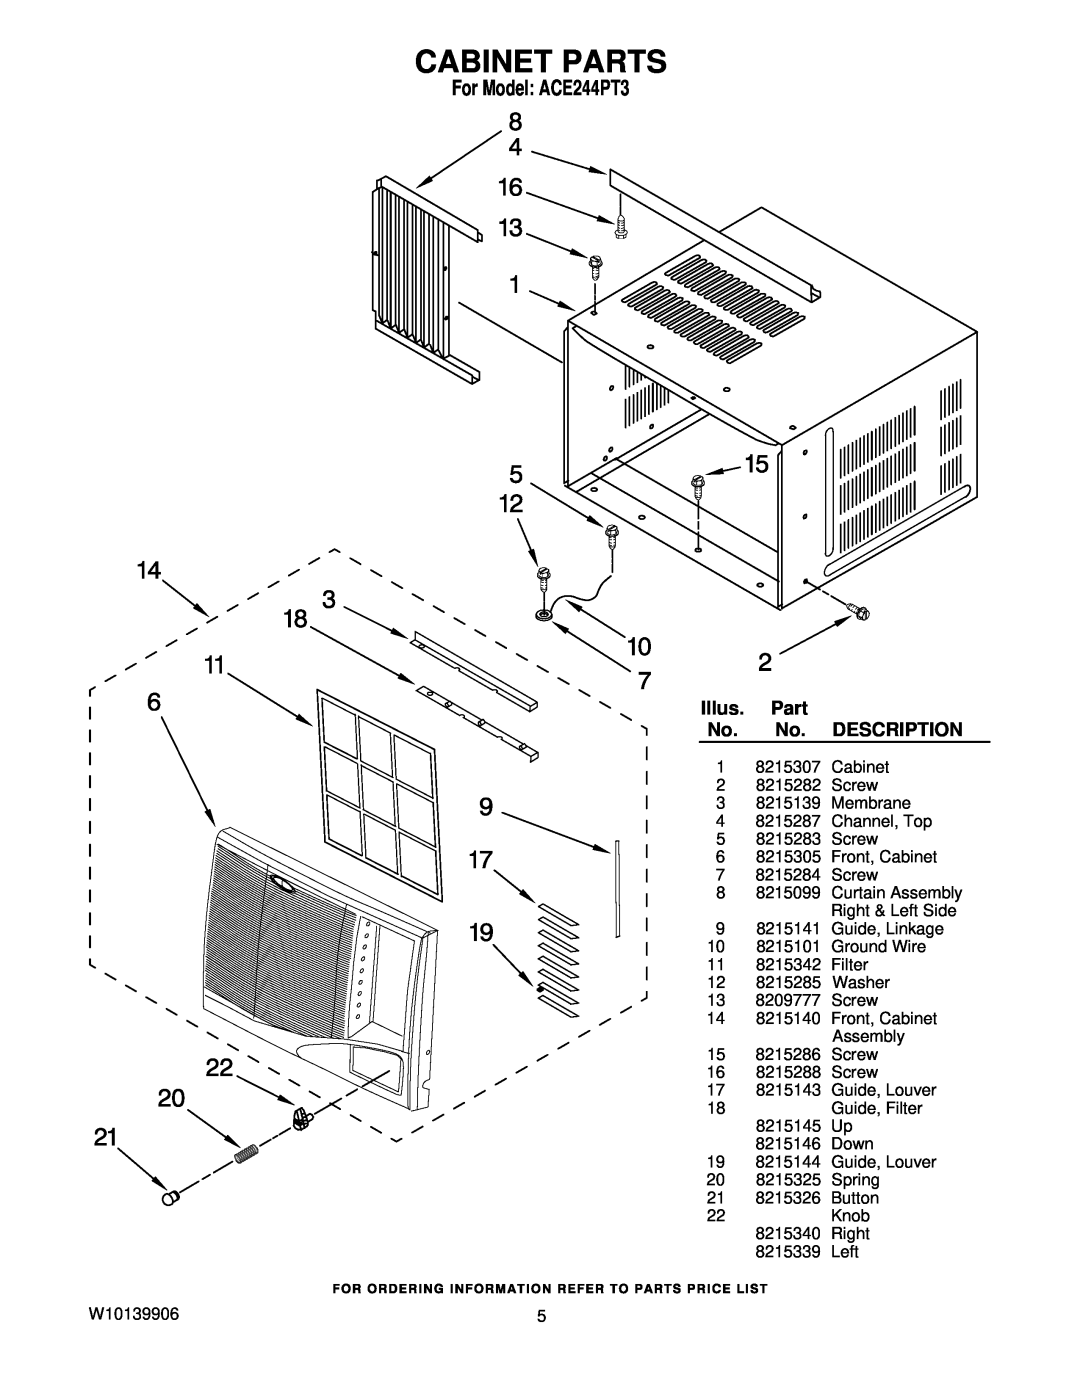 Whirlpool manual Cabinet Parts, Illus, Description, For Model ACE244PT3 